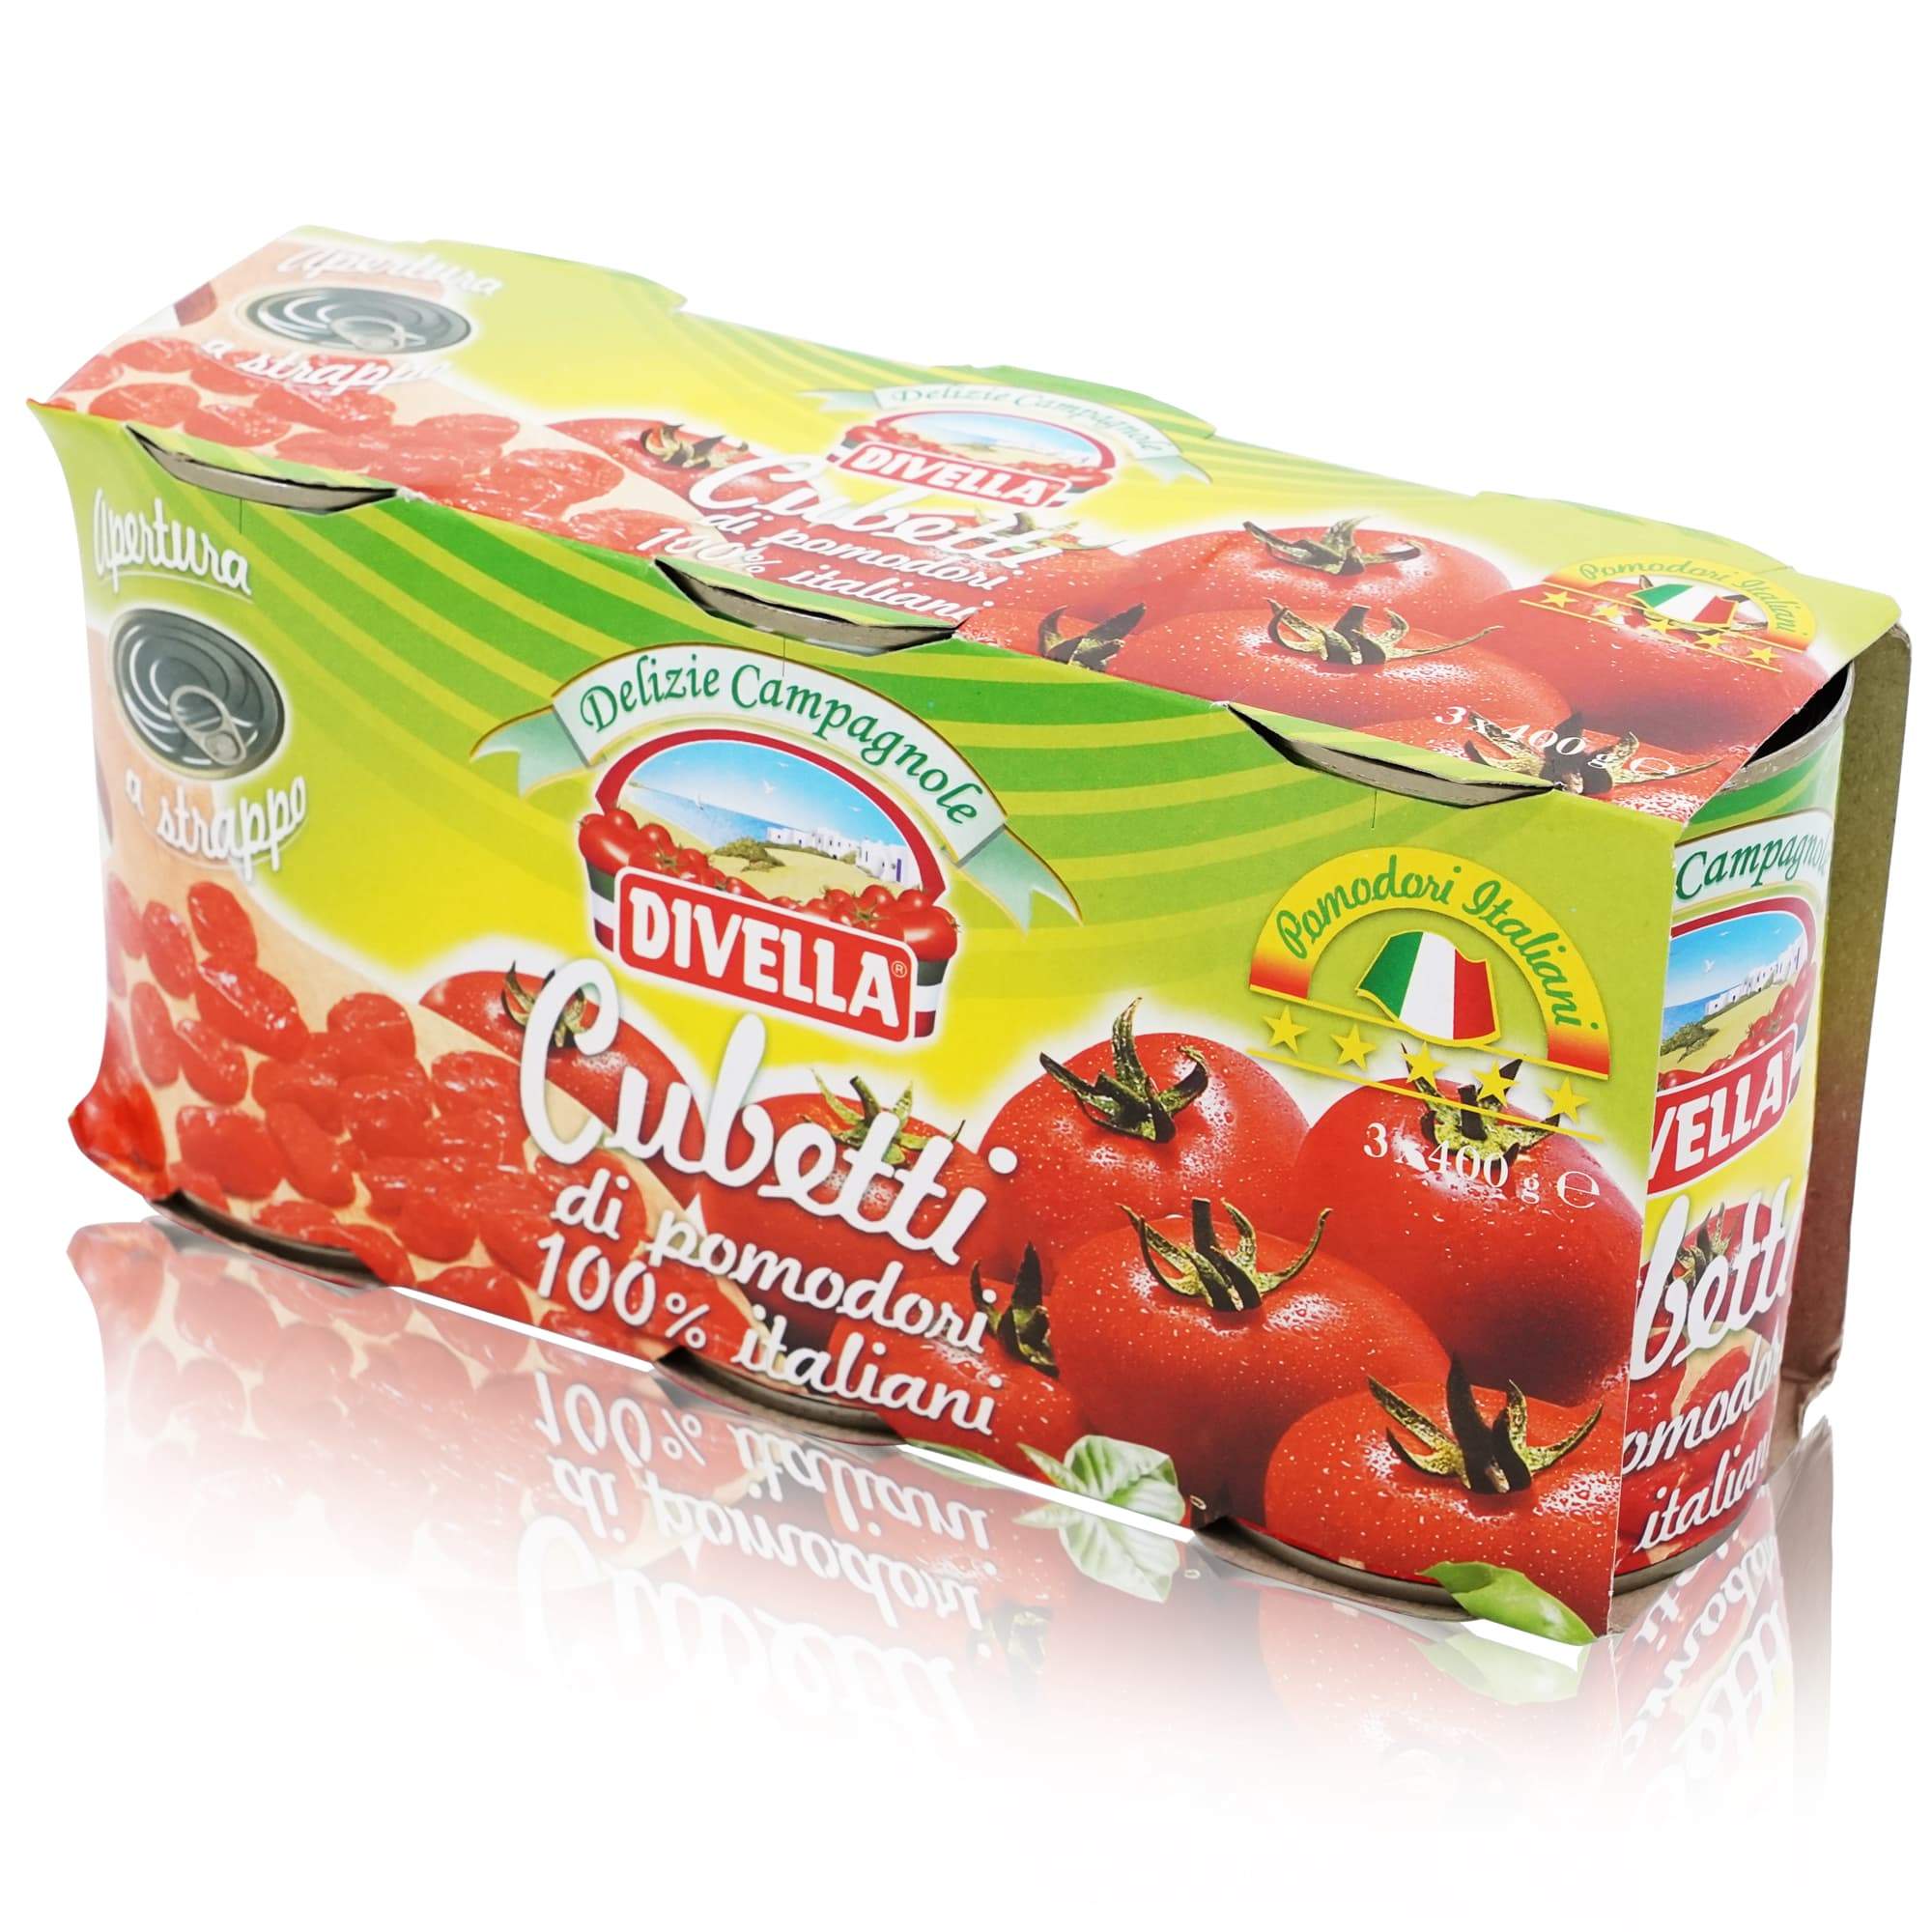 Divella Pomodori Cubetti - 1,2kg - italienisch-einkaufen.de